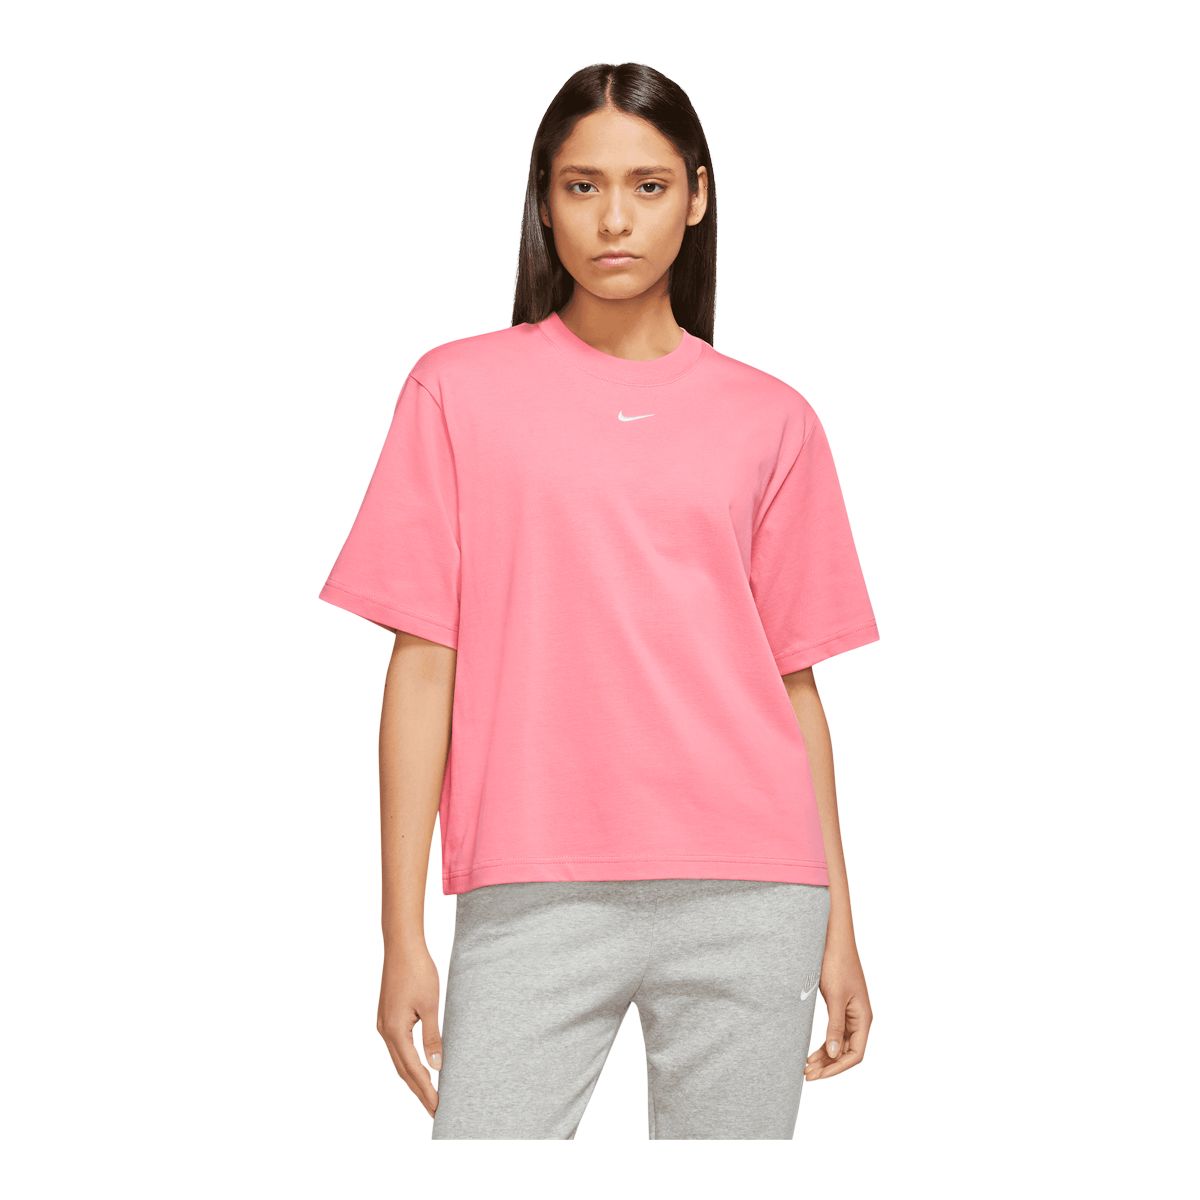 Boxy T-shirt - Pale Pink Cotton